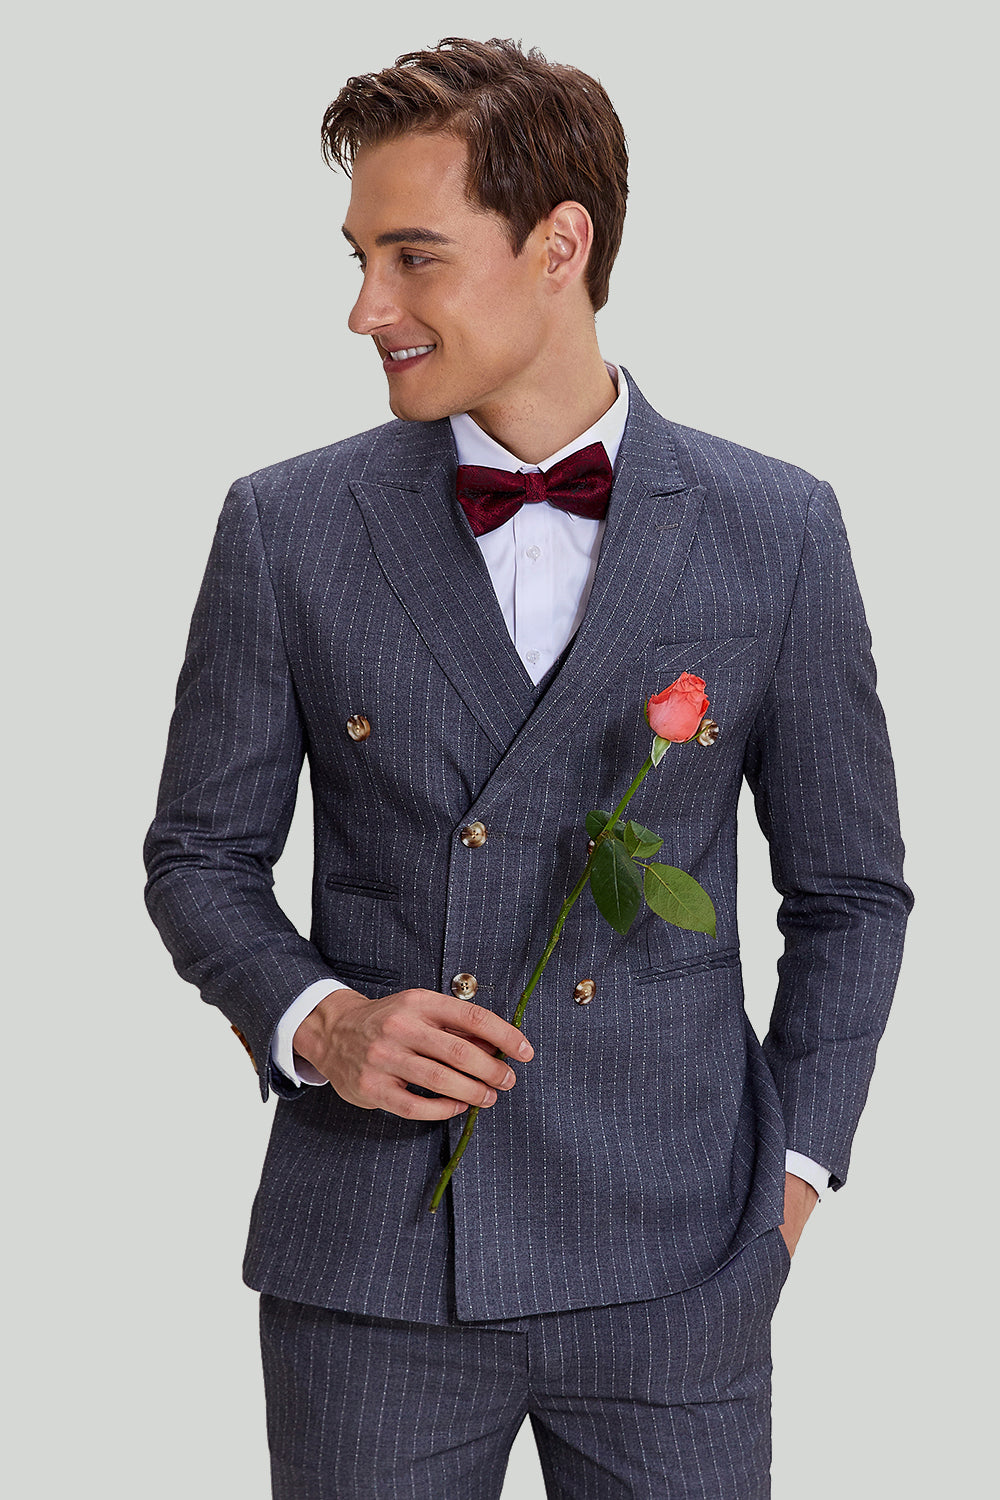 Men's 3 Piece Pinstripe Grey Suit